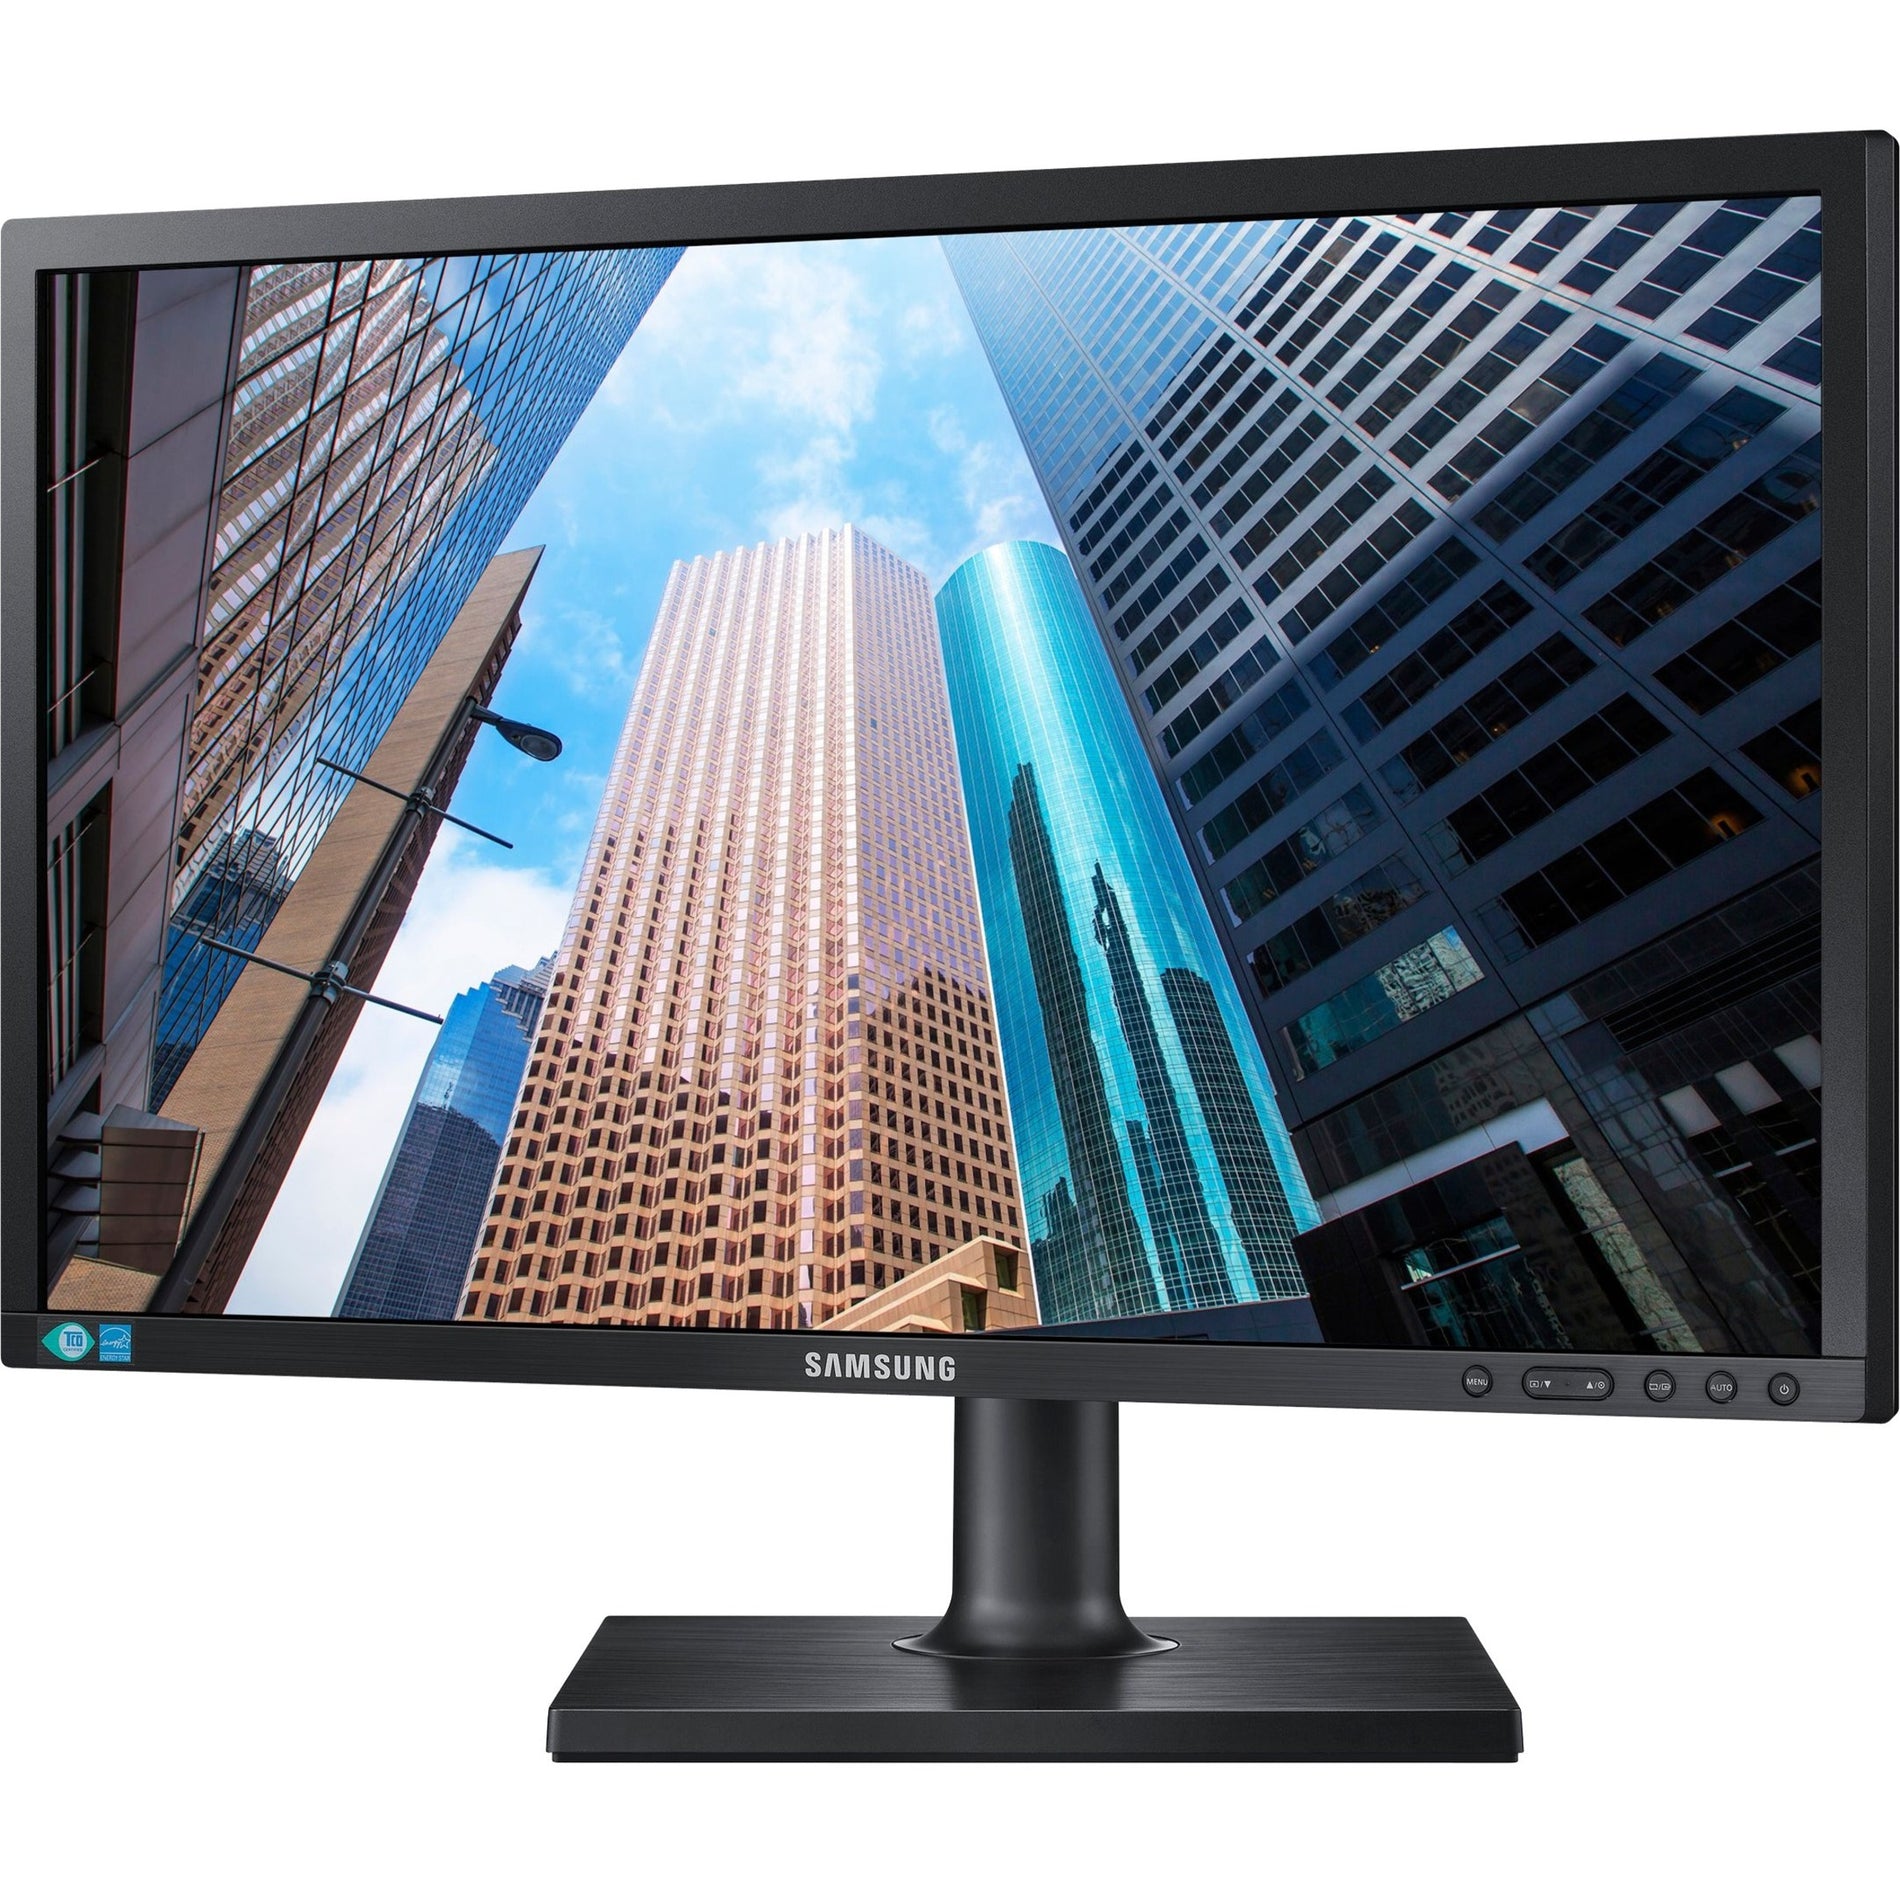 Samsung S24E450DL 23.6" Full HD LCD Monitor - Matte Black, Ergonomic Design, Energy Star Certified